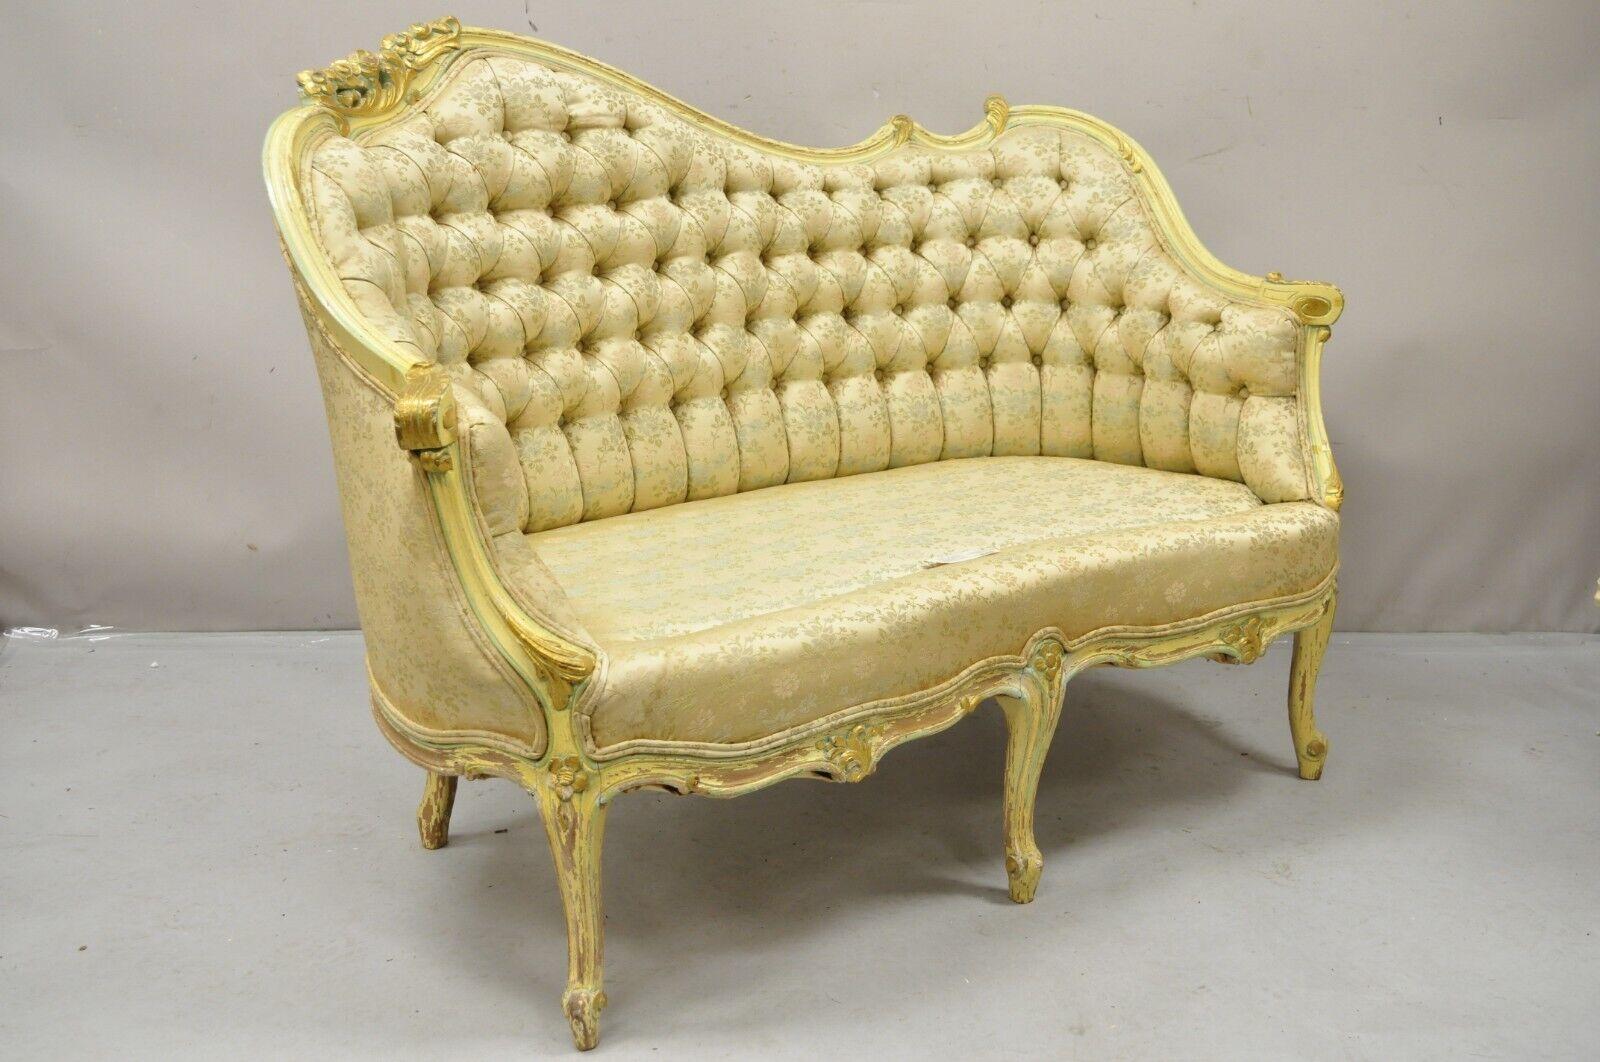 Vintage French Louis XV Rococo Style Yellow & Green Settee Loveseat Sofa. L'article présente un cadre en bois massif, des détails joliment sculptés, une finition vieillie, un bel article vintage. Circa  Milieu du 20e siècle. Dimensions : 35,5